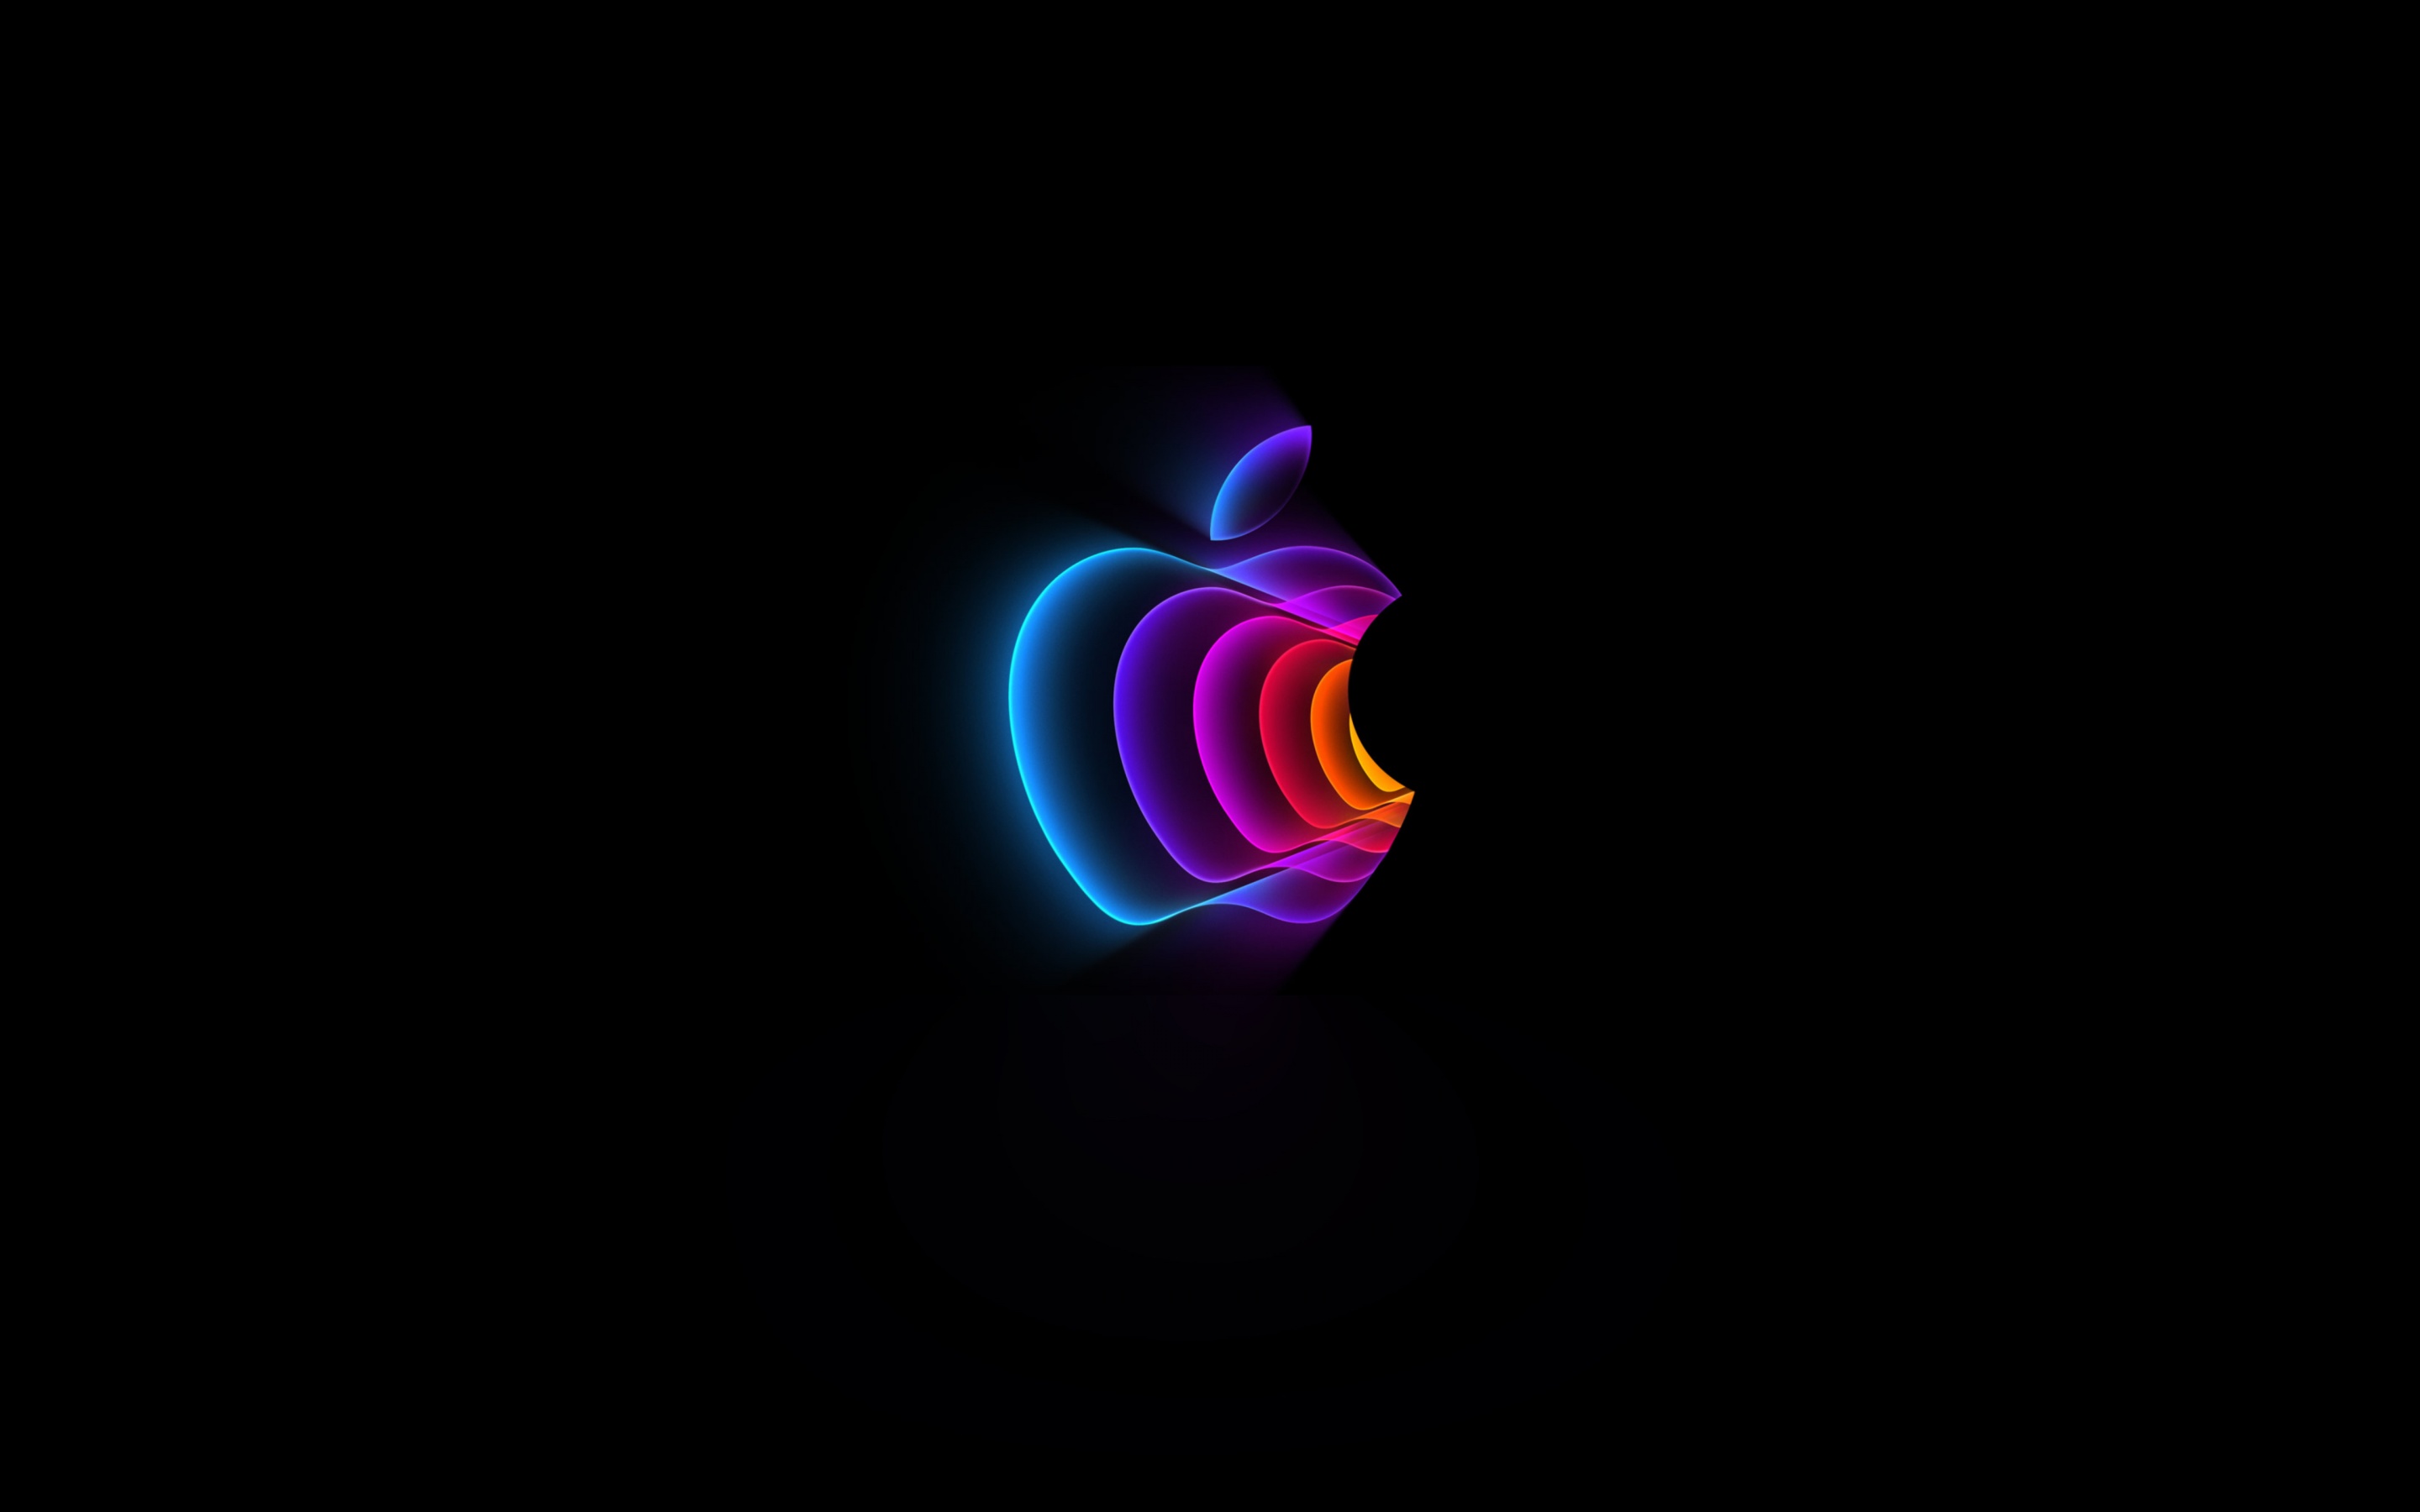 Chiêm ngưỡng vẻ đẹp của hình ảnh nền sự kiện Apple 2022 đầy màu sắc, kỹ thuật và logo táo 4K này! Được thiết kế với sự kỹ lưỡng và tinh tế, hình nền này sẽ đưa bạn đến một tầm cao mới về thế giới Apple. Hãy truy cập và cảm nhận ngay!